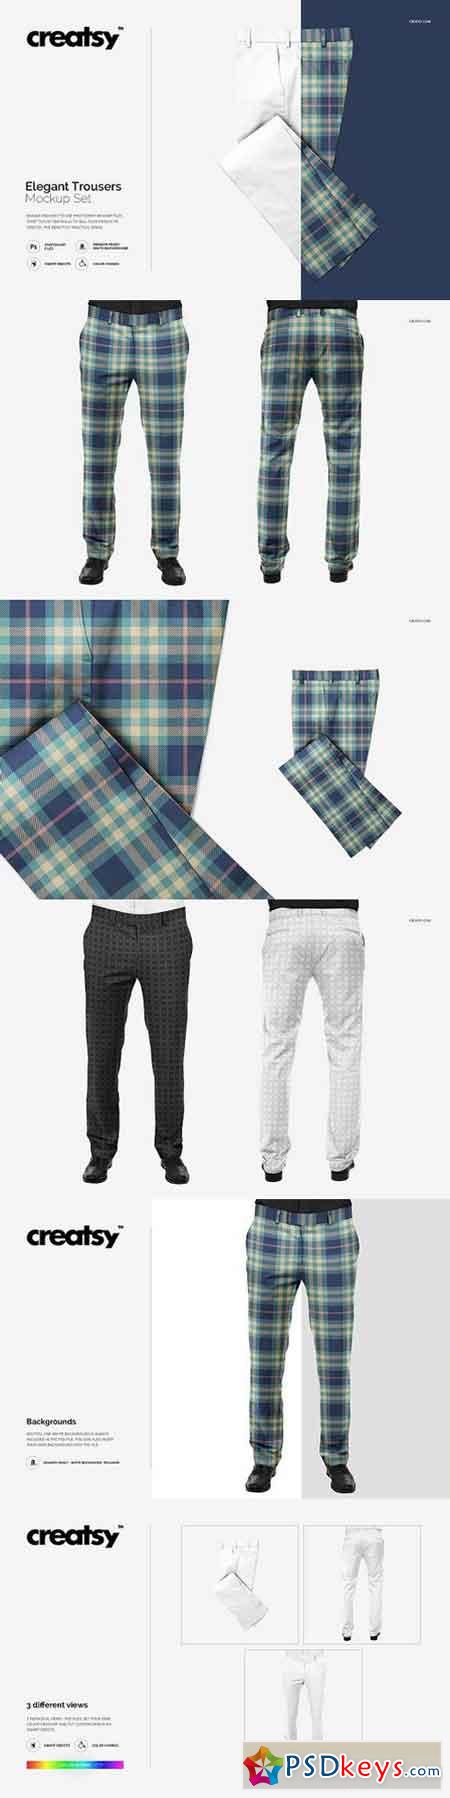 Elegant Trousers Mockup Set 1270709